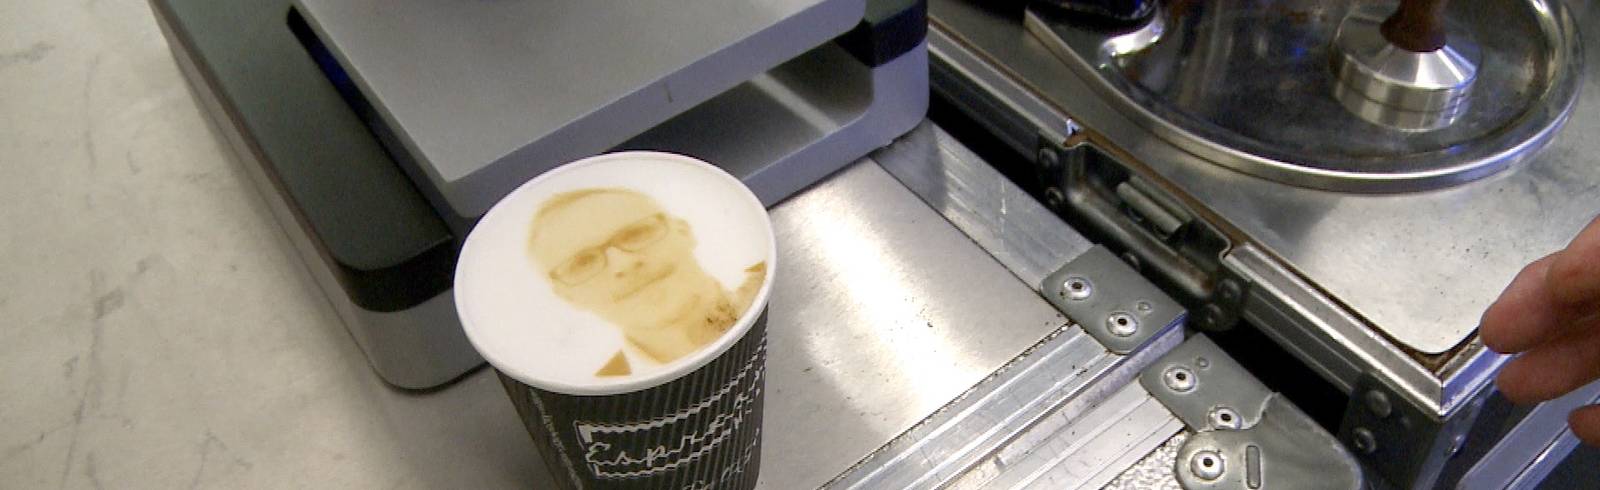 Digitaler Kaffeeschaum